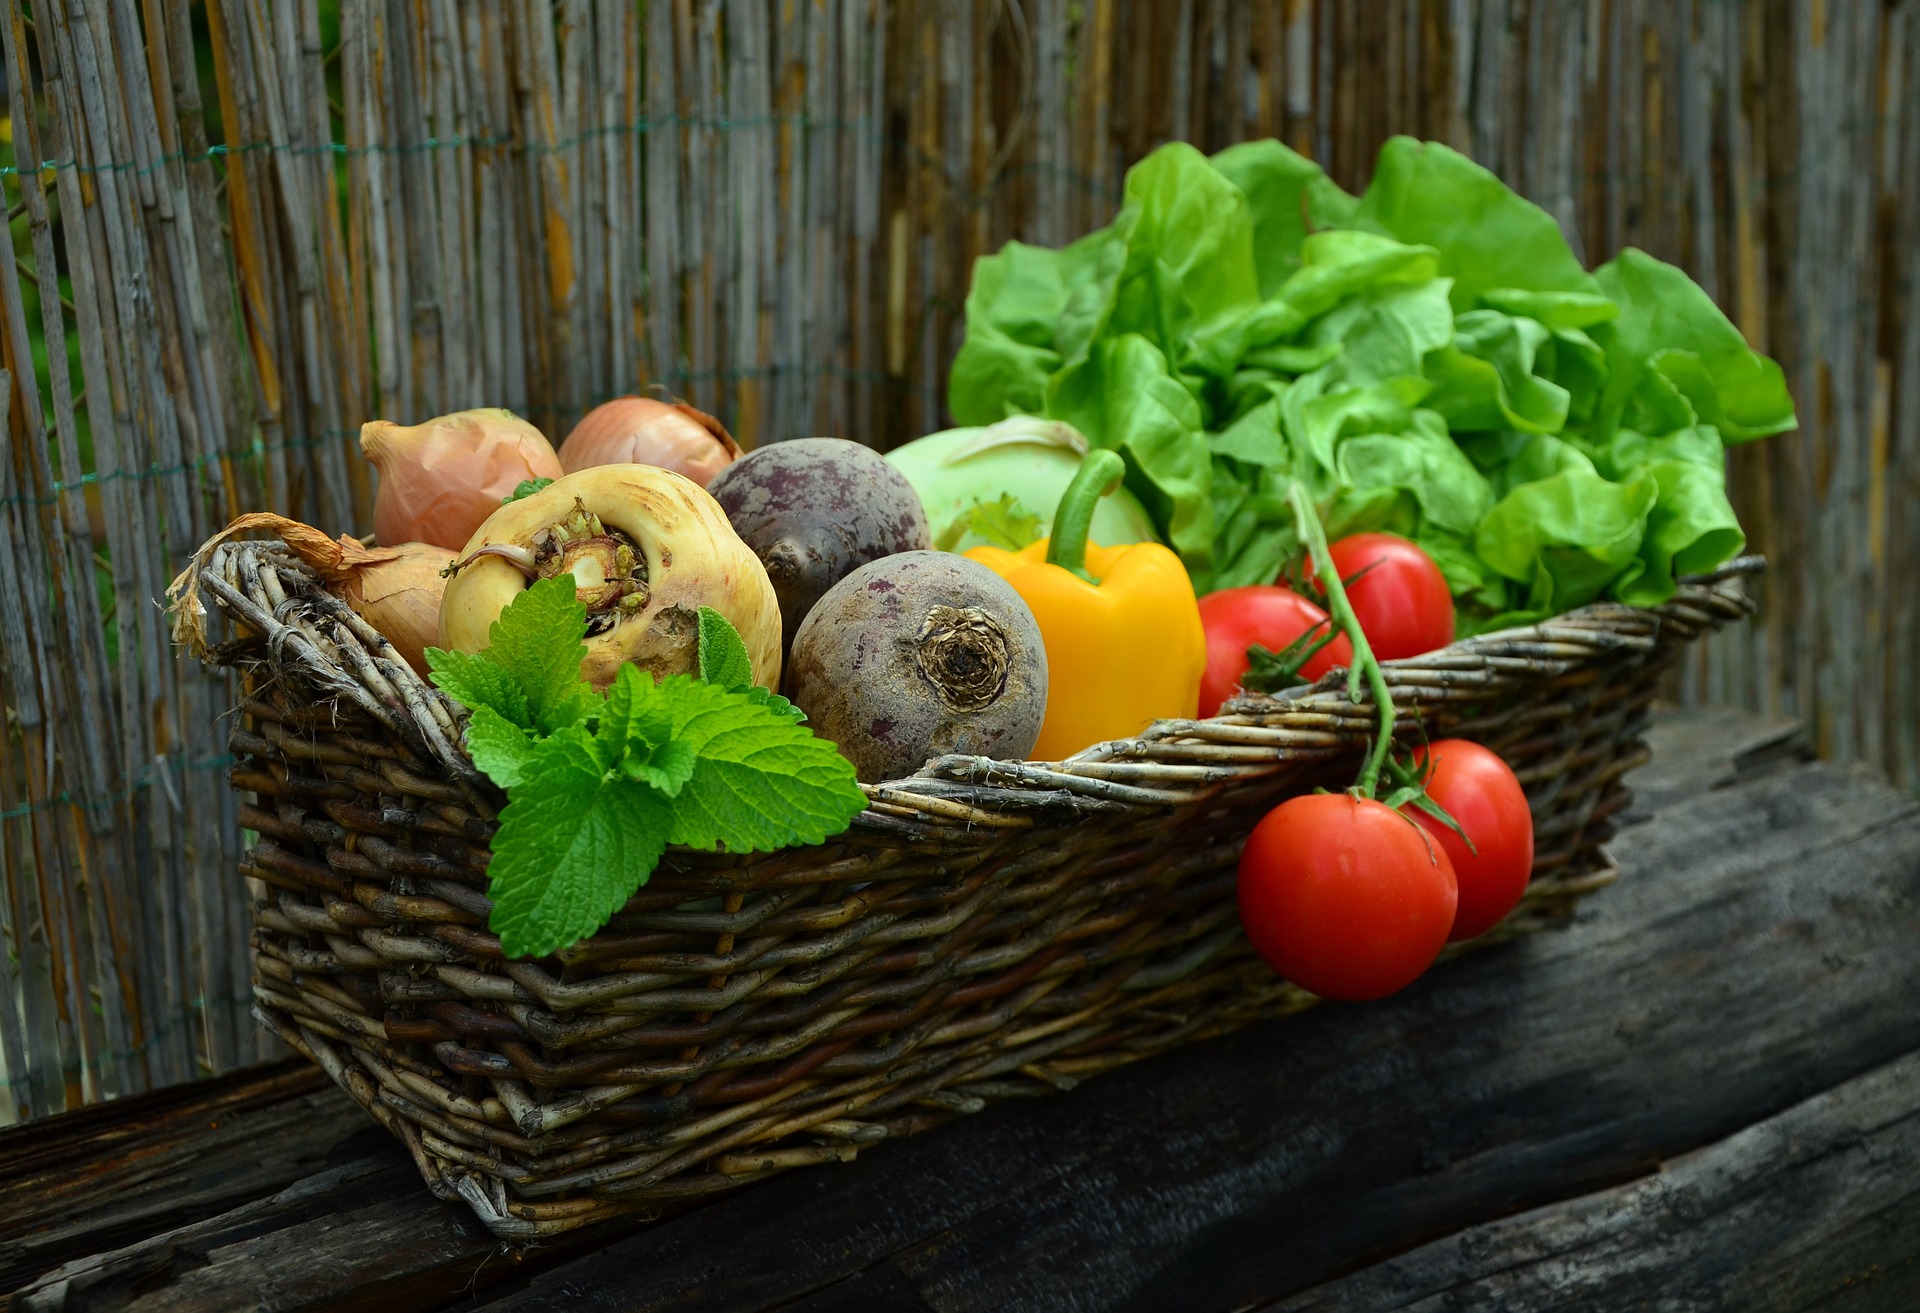 Perdre du poids en mangeant des fruits et légumes